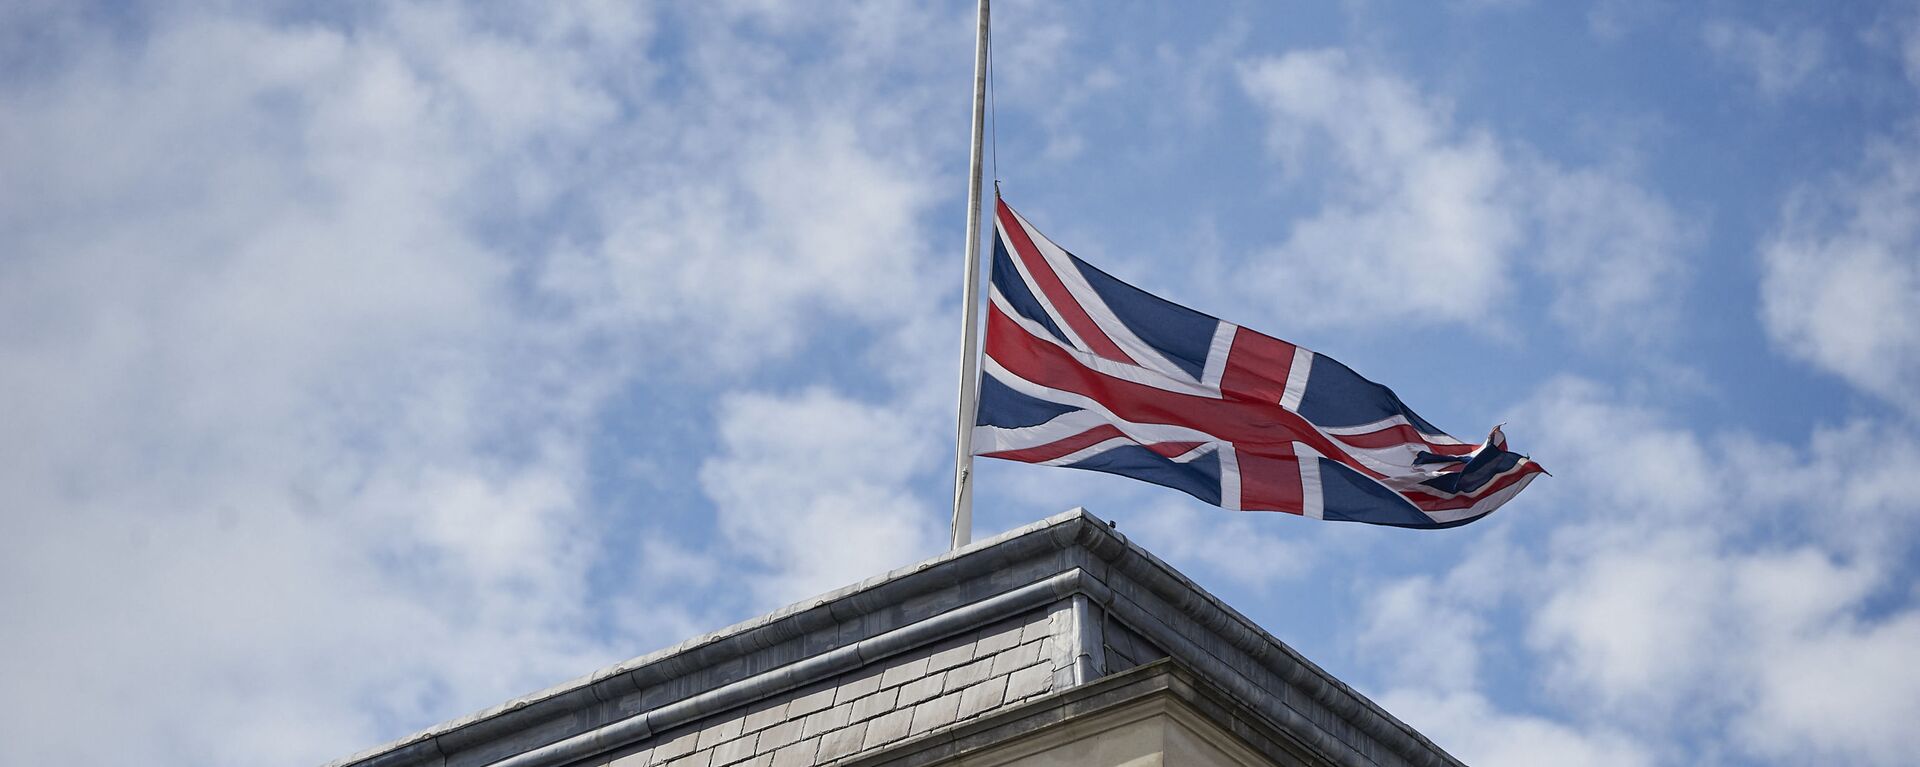 Quốc kỳ Anh trên tòa nhà Bộ Ngoại giao Anh ở London. - Sputnik Việt Nam, 1920, 16.04.2022